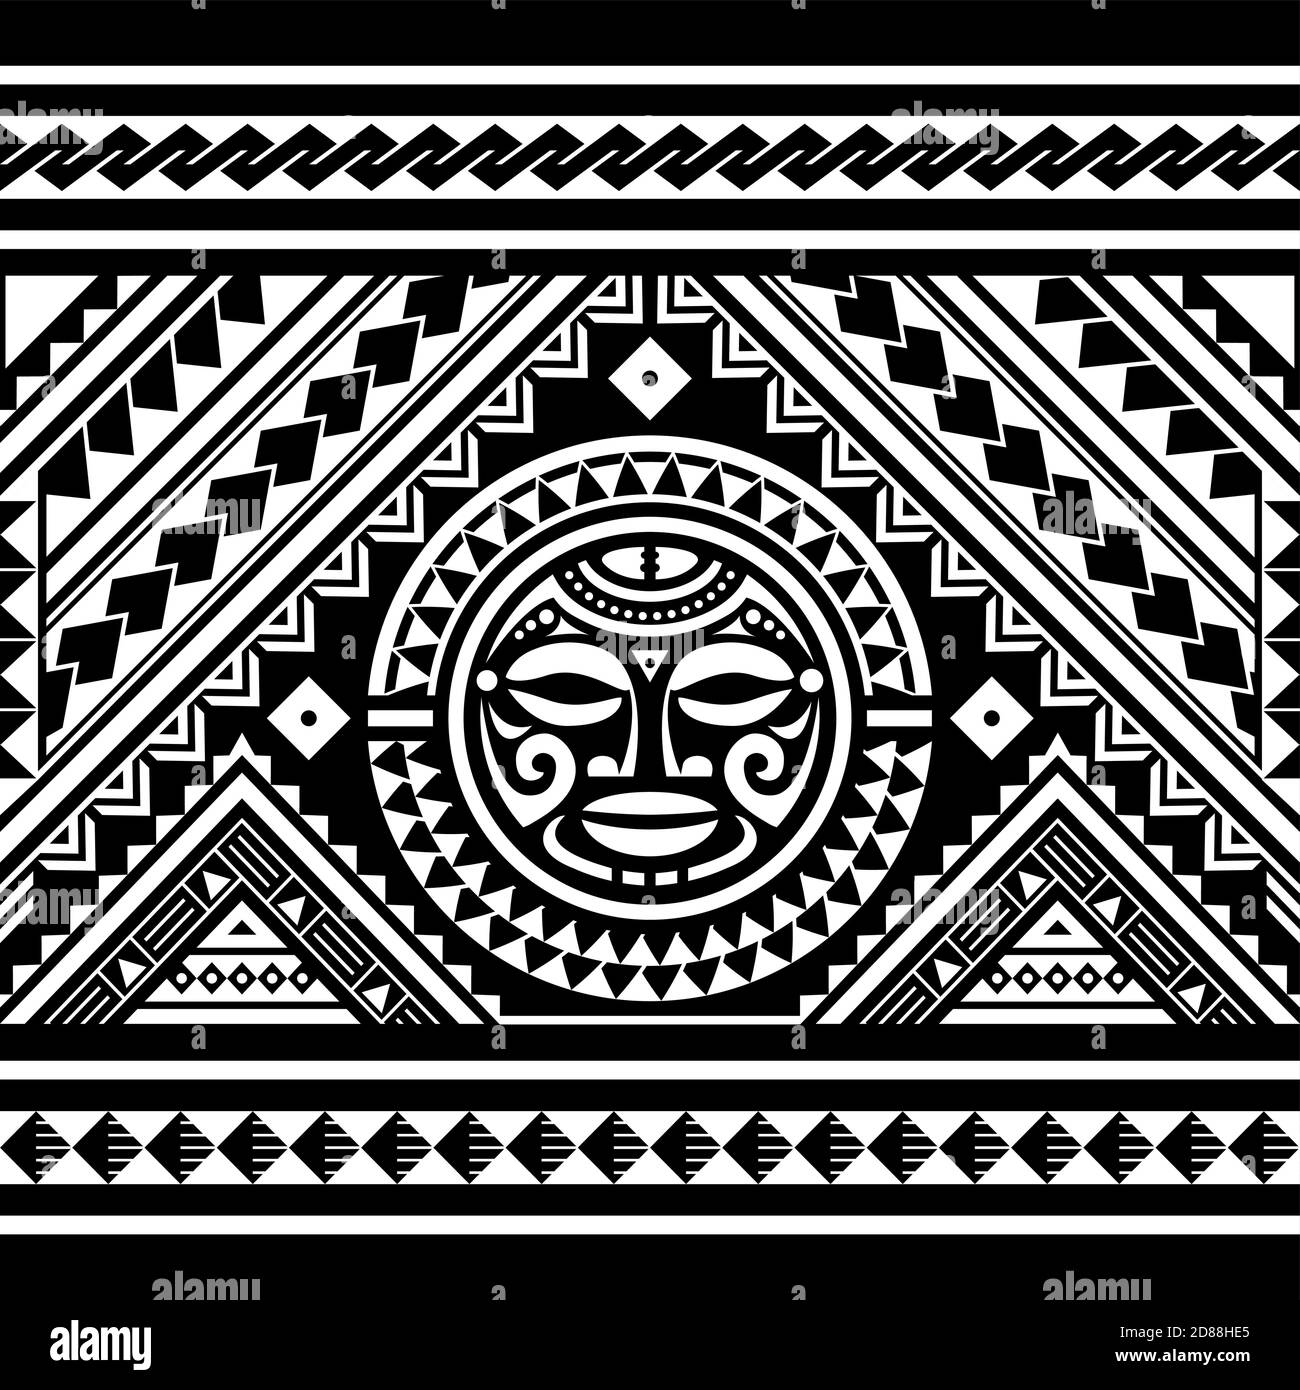 Polynesische nahtlose geometrische Vektor-Muster mit Maori Gesicht Mandala Tattoo-Design, hawaiianische Tribal Ornament in weiß auf schwarzem Hintergrund Stock Vektor